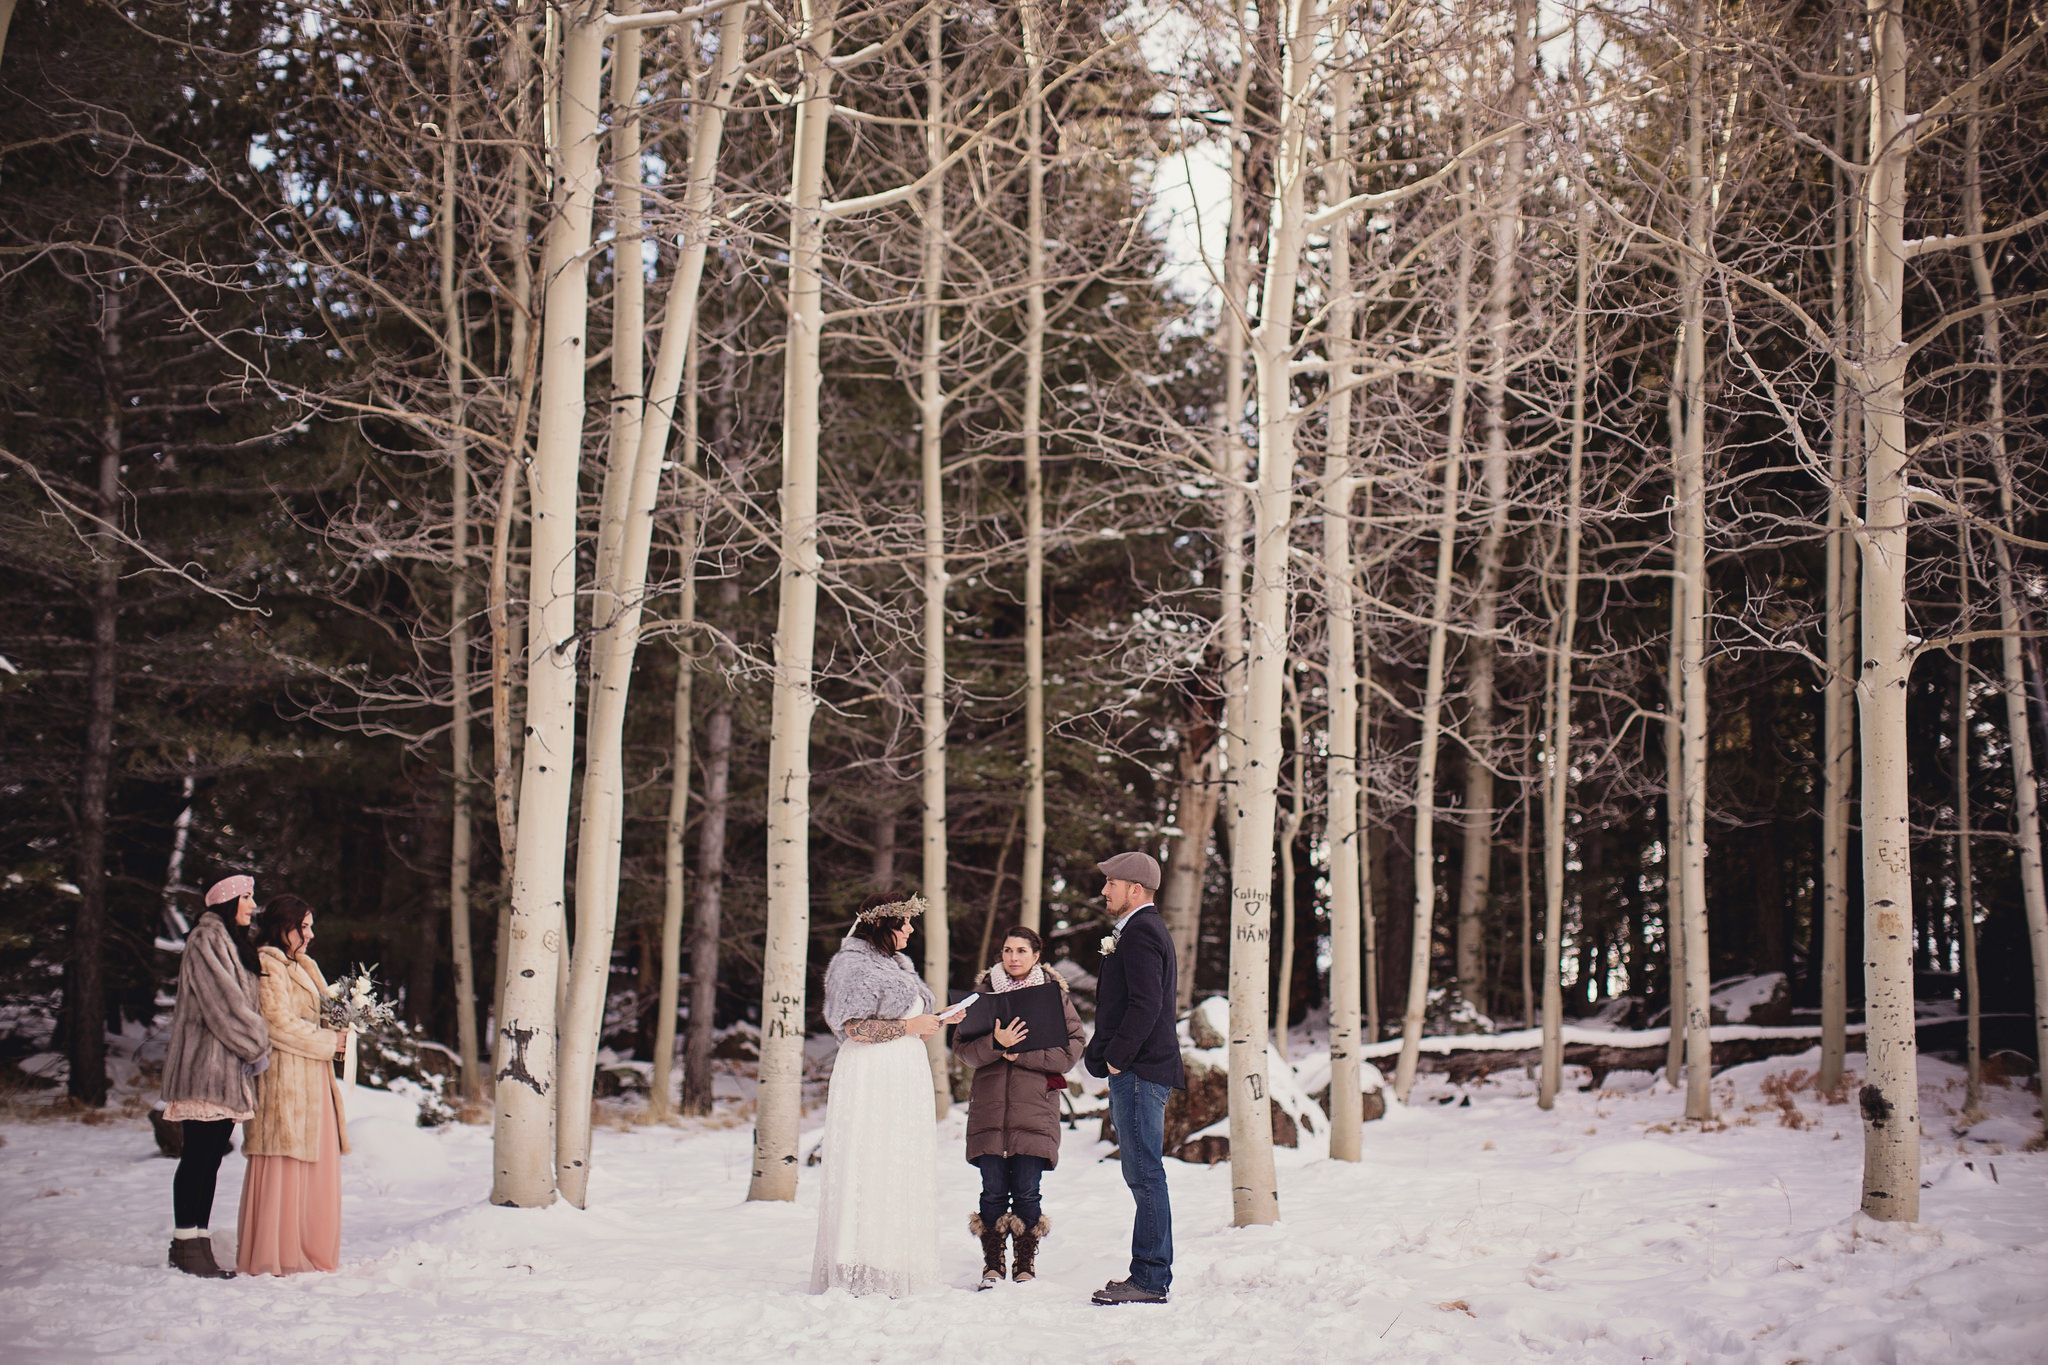 Snowy Rustic Wedding